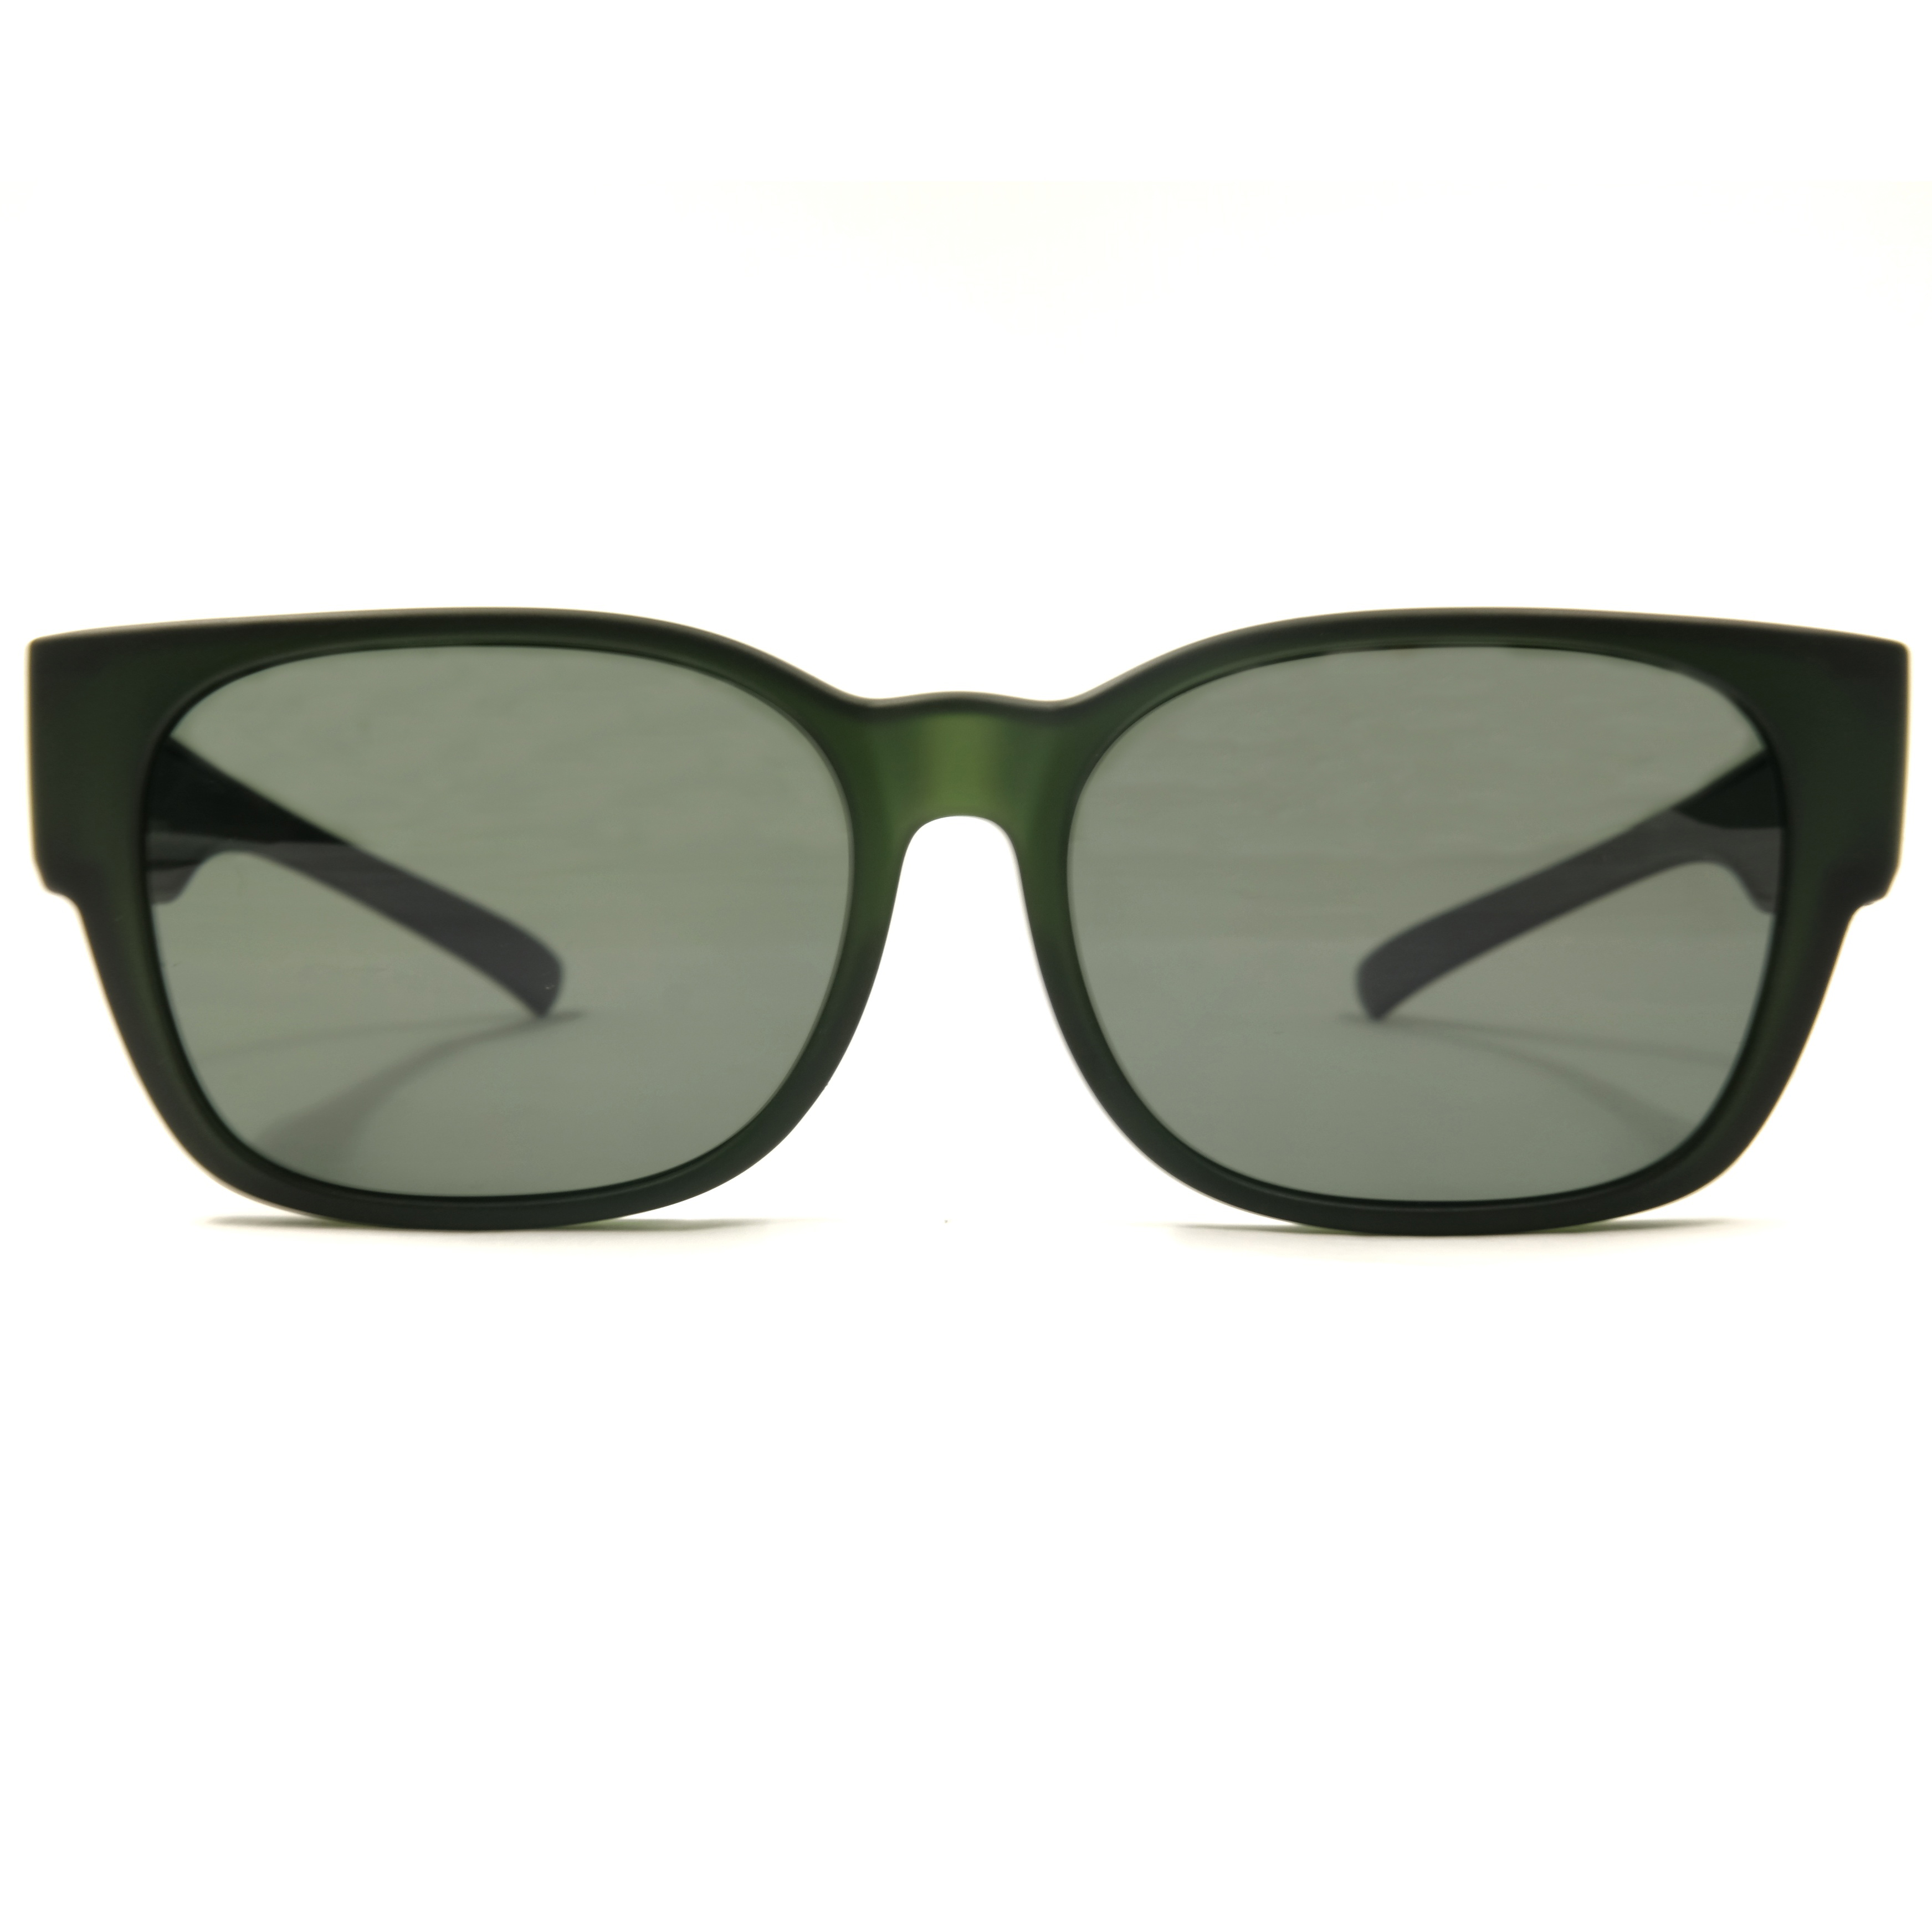 Gafas de sol ajustadas Proveedores de gafas Fitover Gafas de sol Freedom Factory